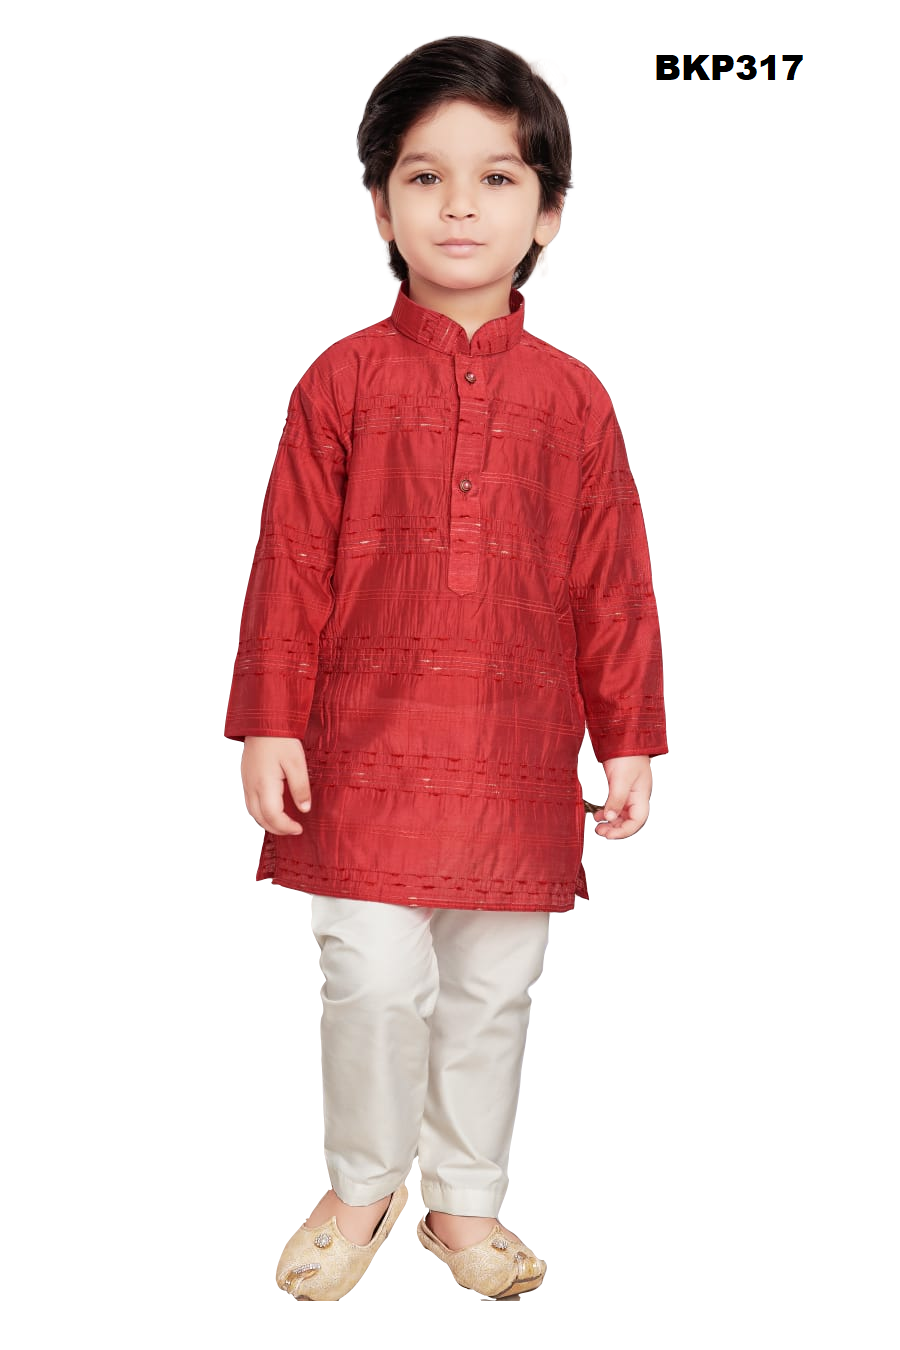 BKP317 - Cheery Red art silk kurta pajama set with crushed texture